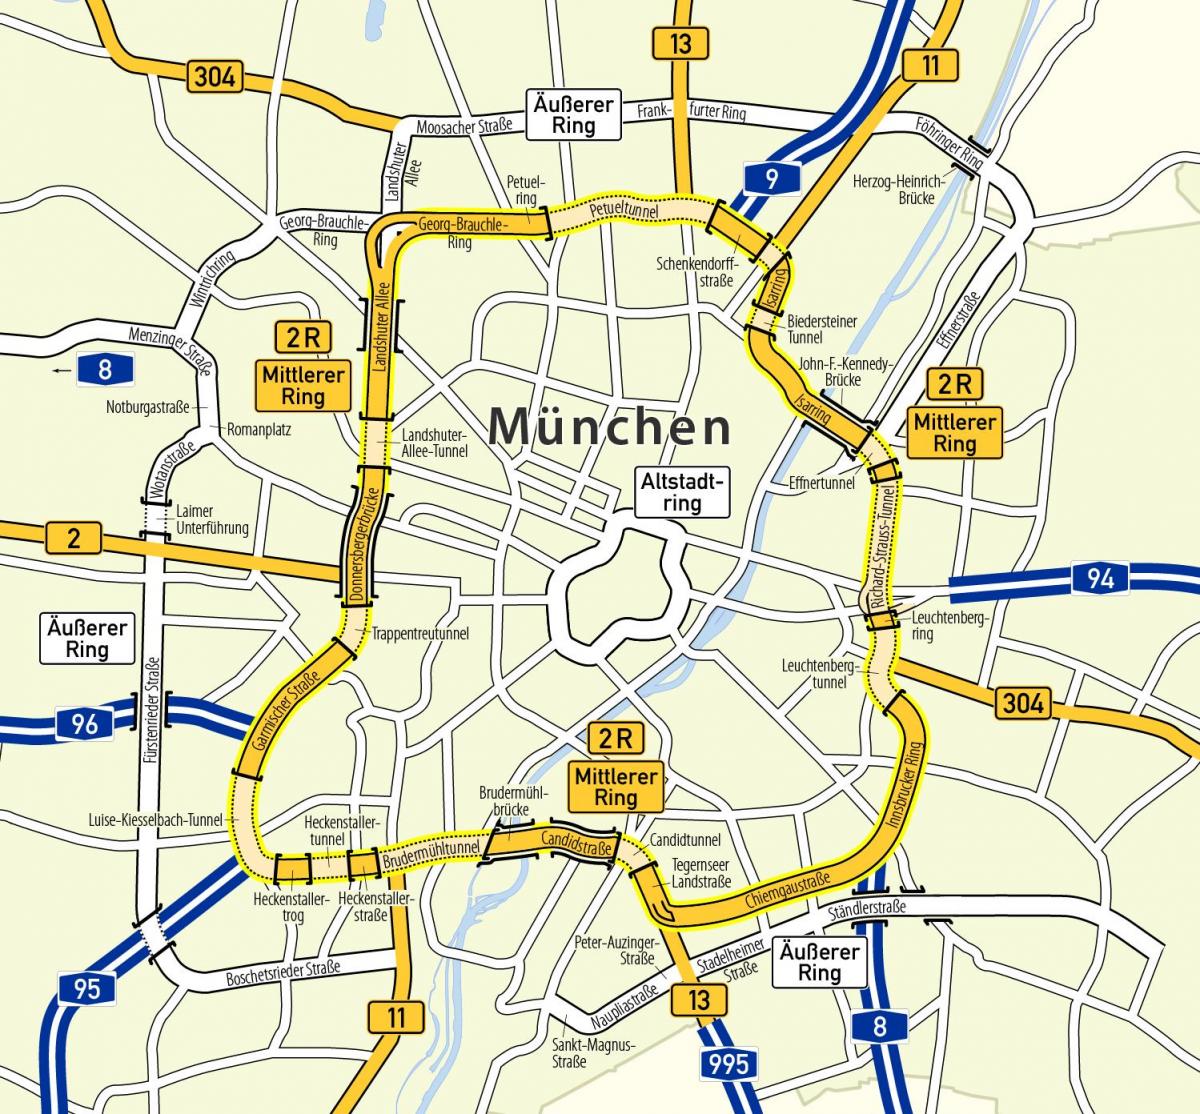 munchen ბეჭედი რუკა